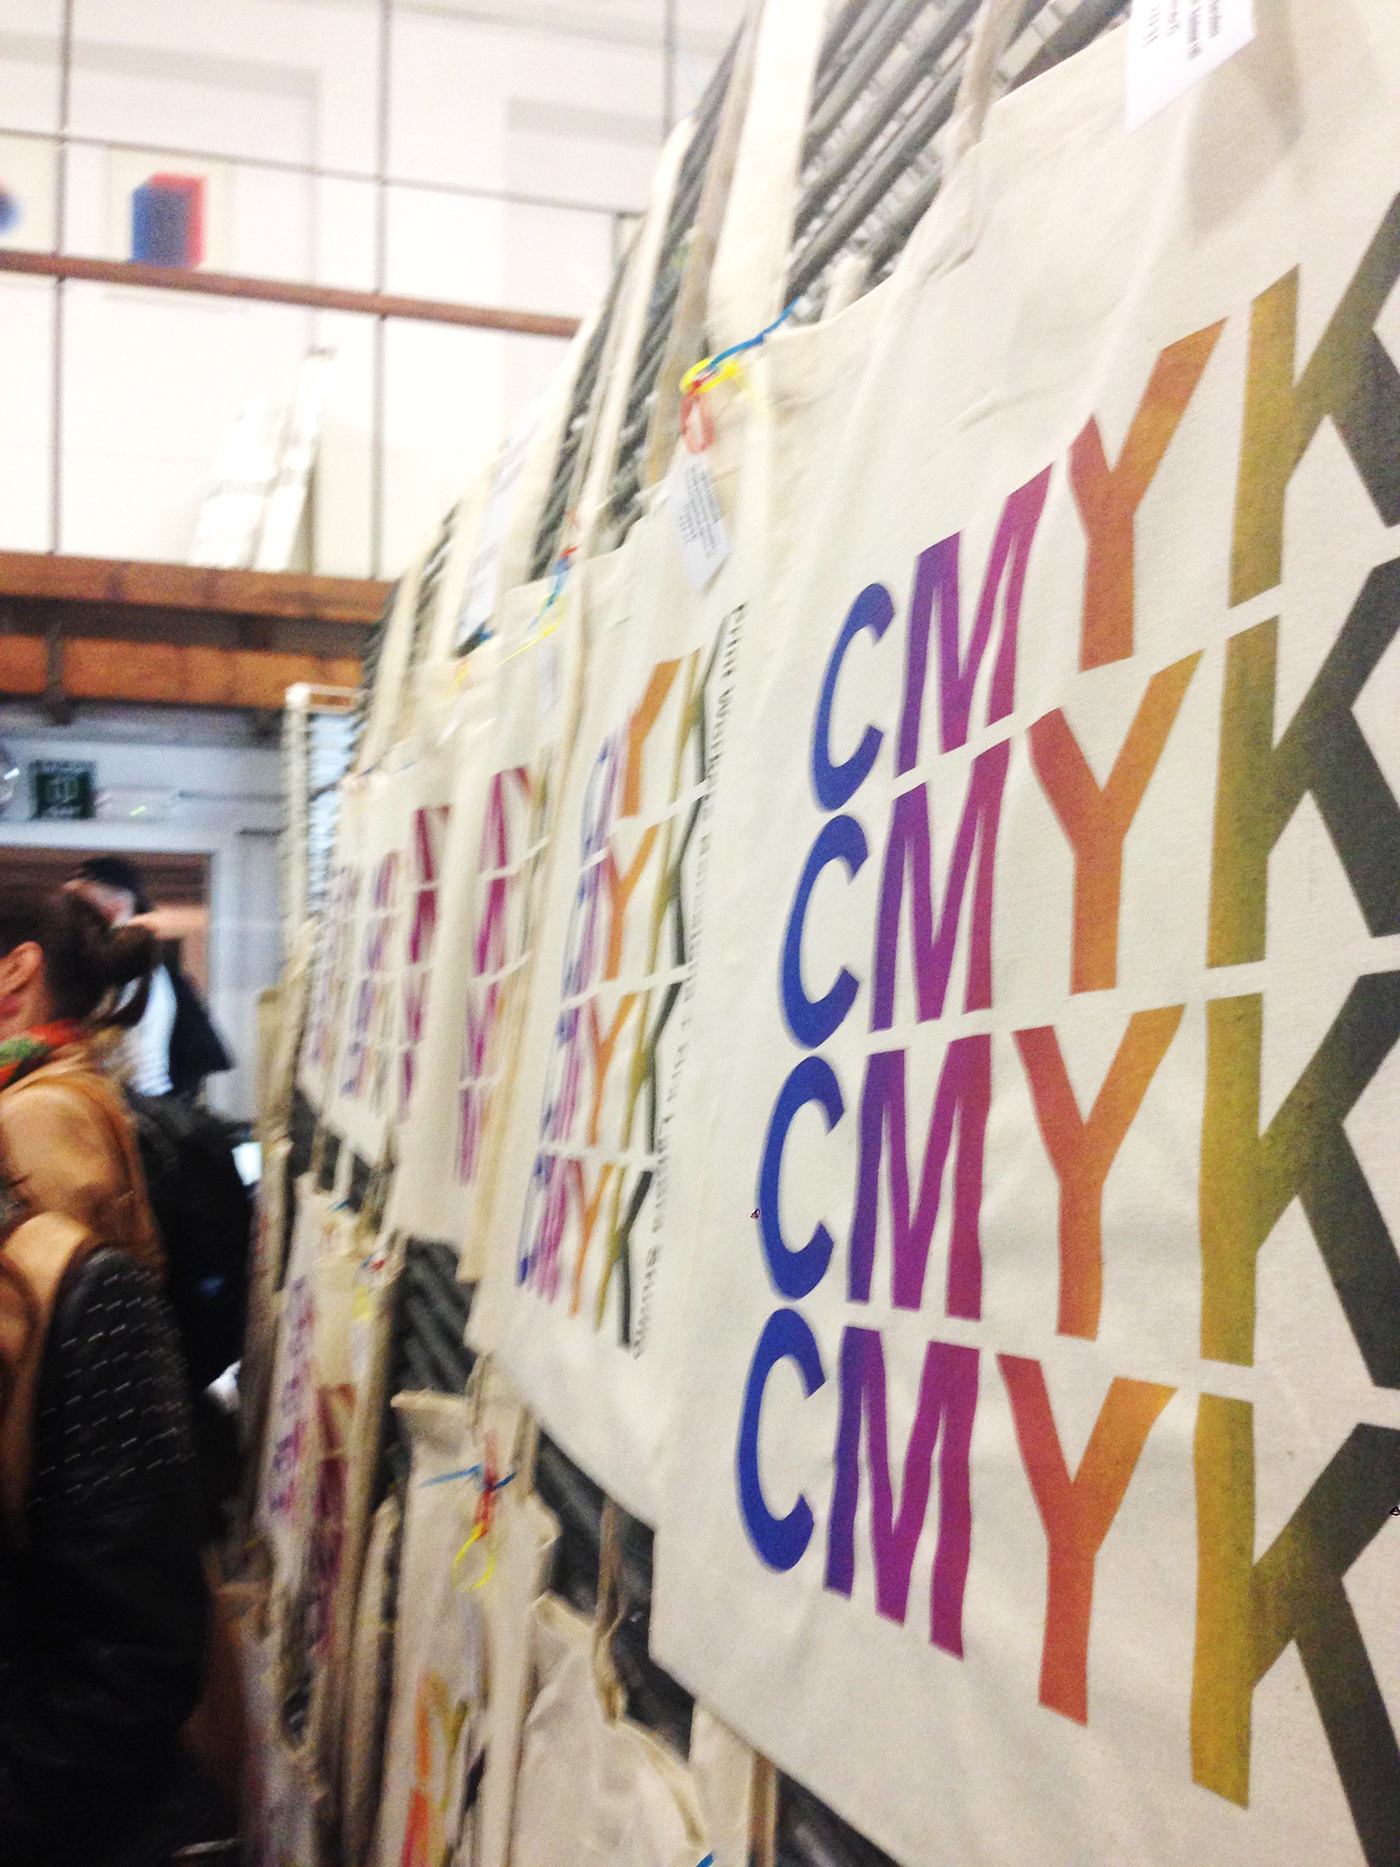 CMYK ora labora studio Print workers Barcelona grabado serigrafia risografia silkscreen risograph Riso escritura